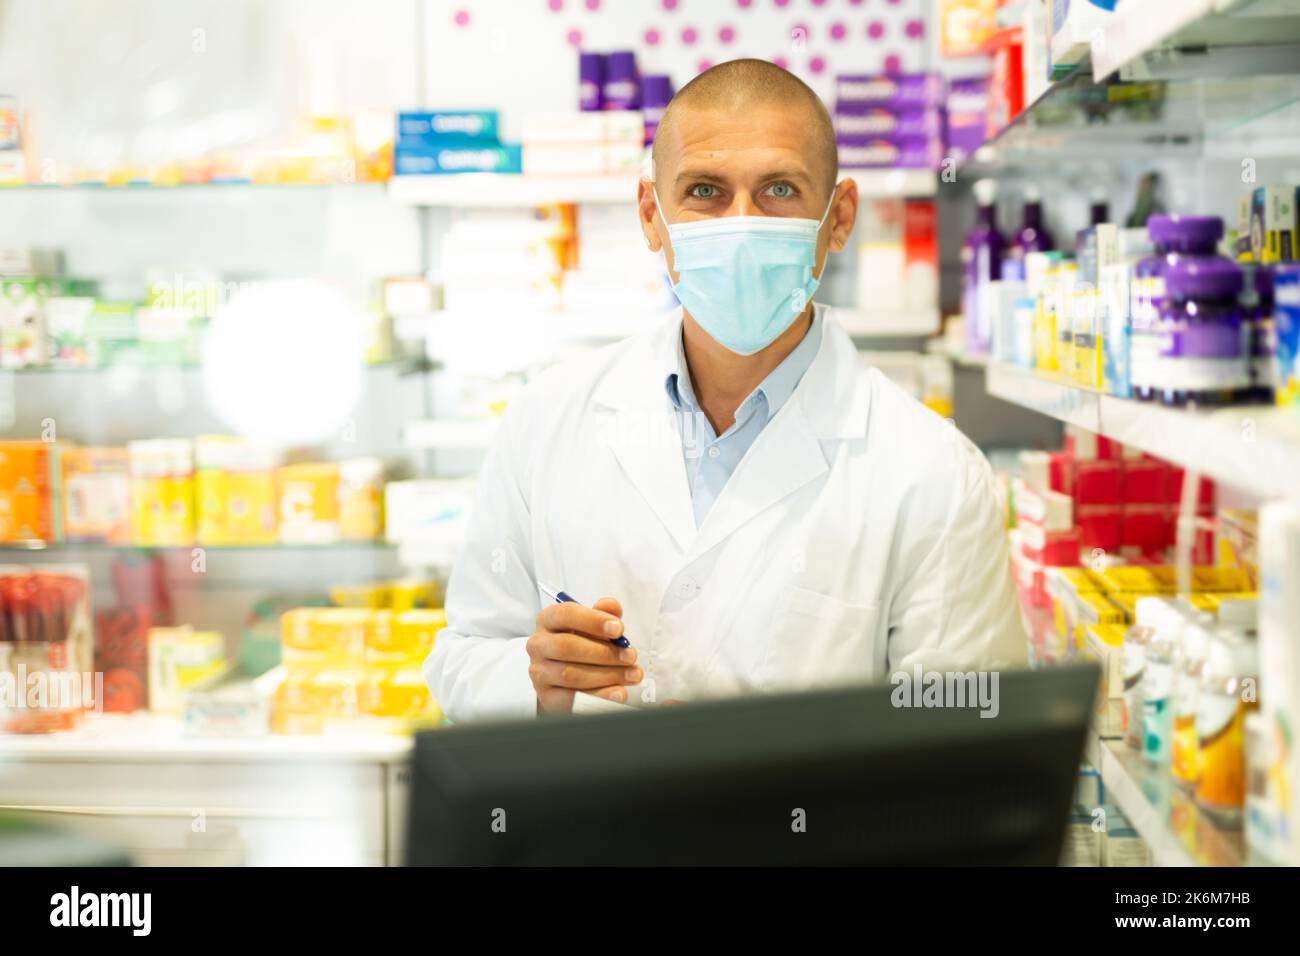 Ritratto del farmacista in maschera medica lavorando al registratore di cassa in farmacia Foto Stock